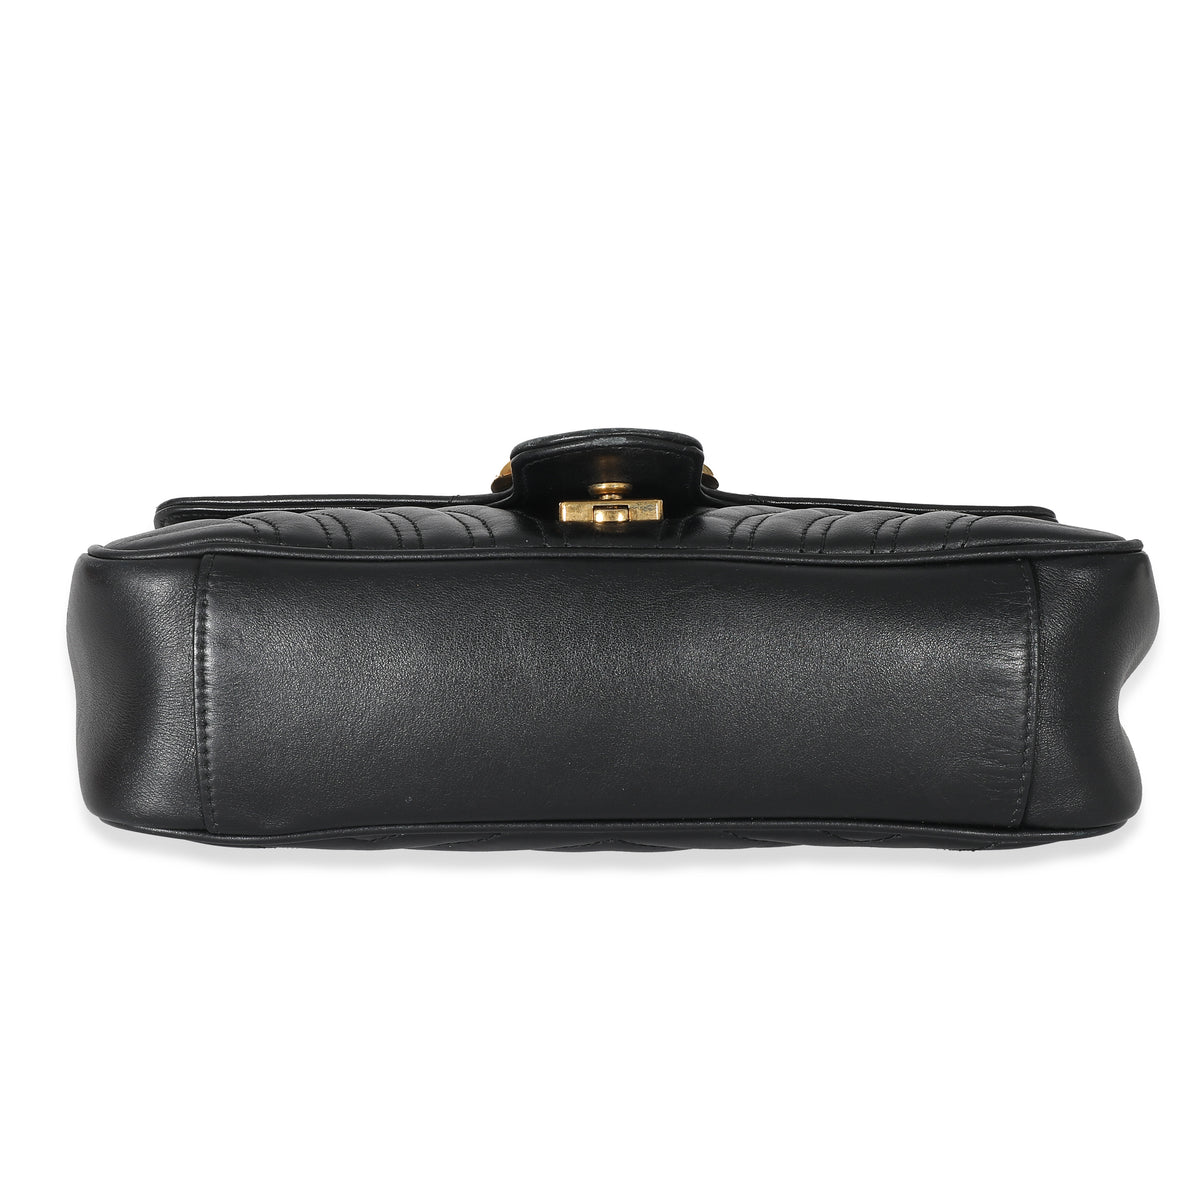 Gucci Black Chevron Matelassé Leather Small GG Marmont Shoulder Bag